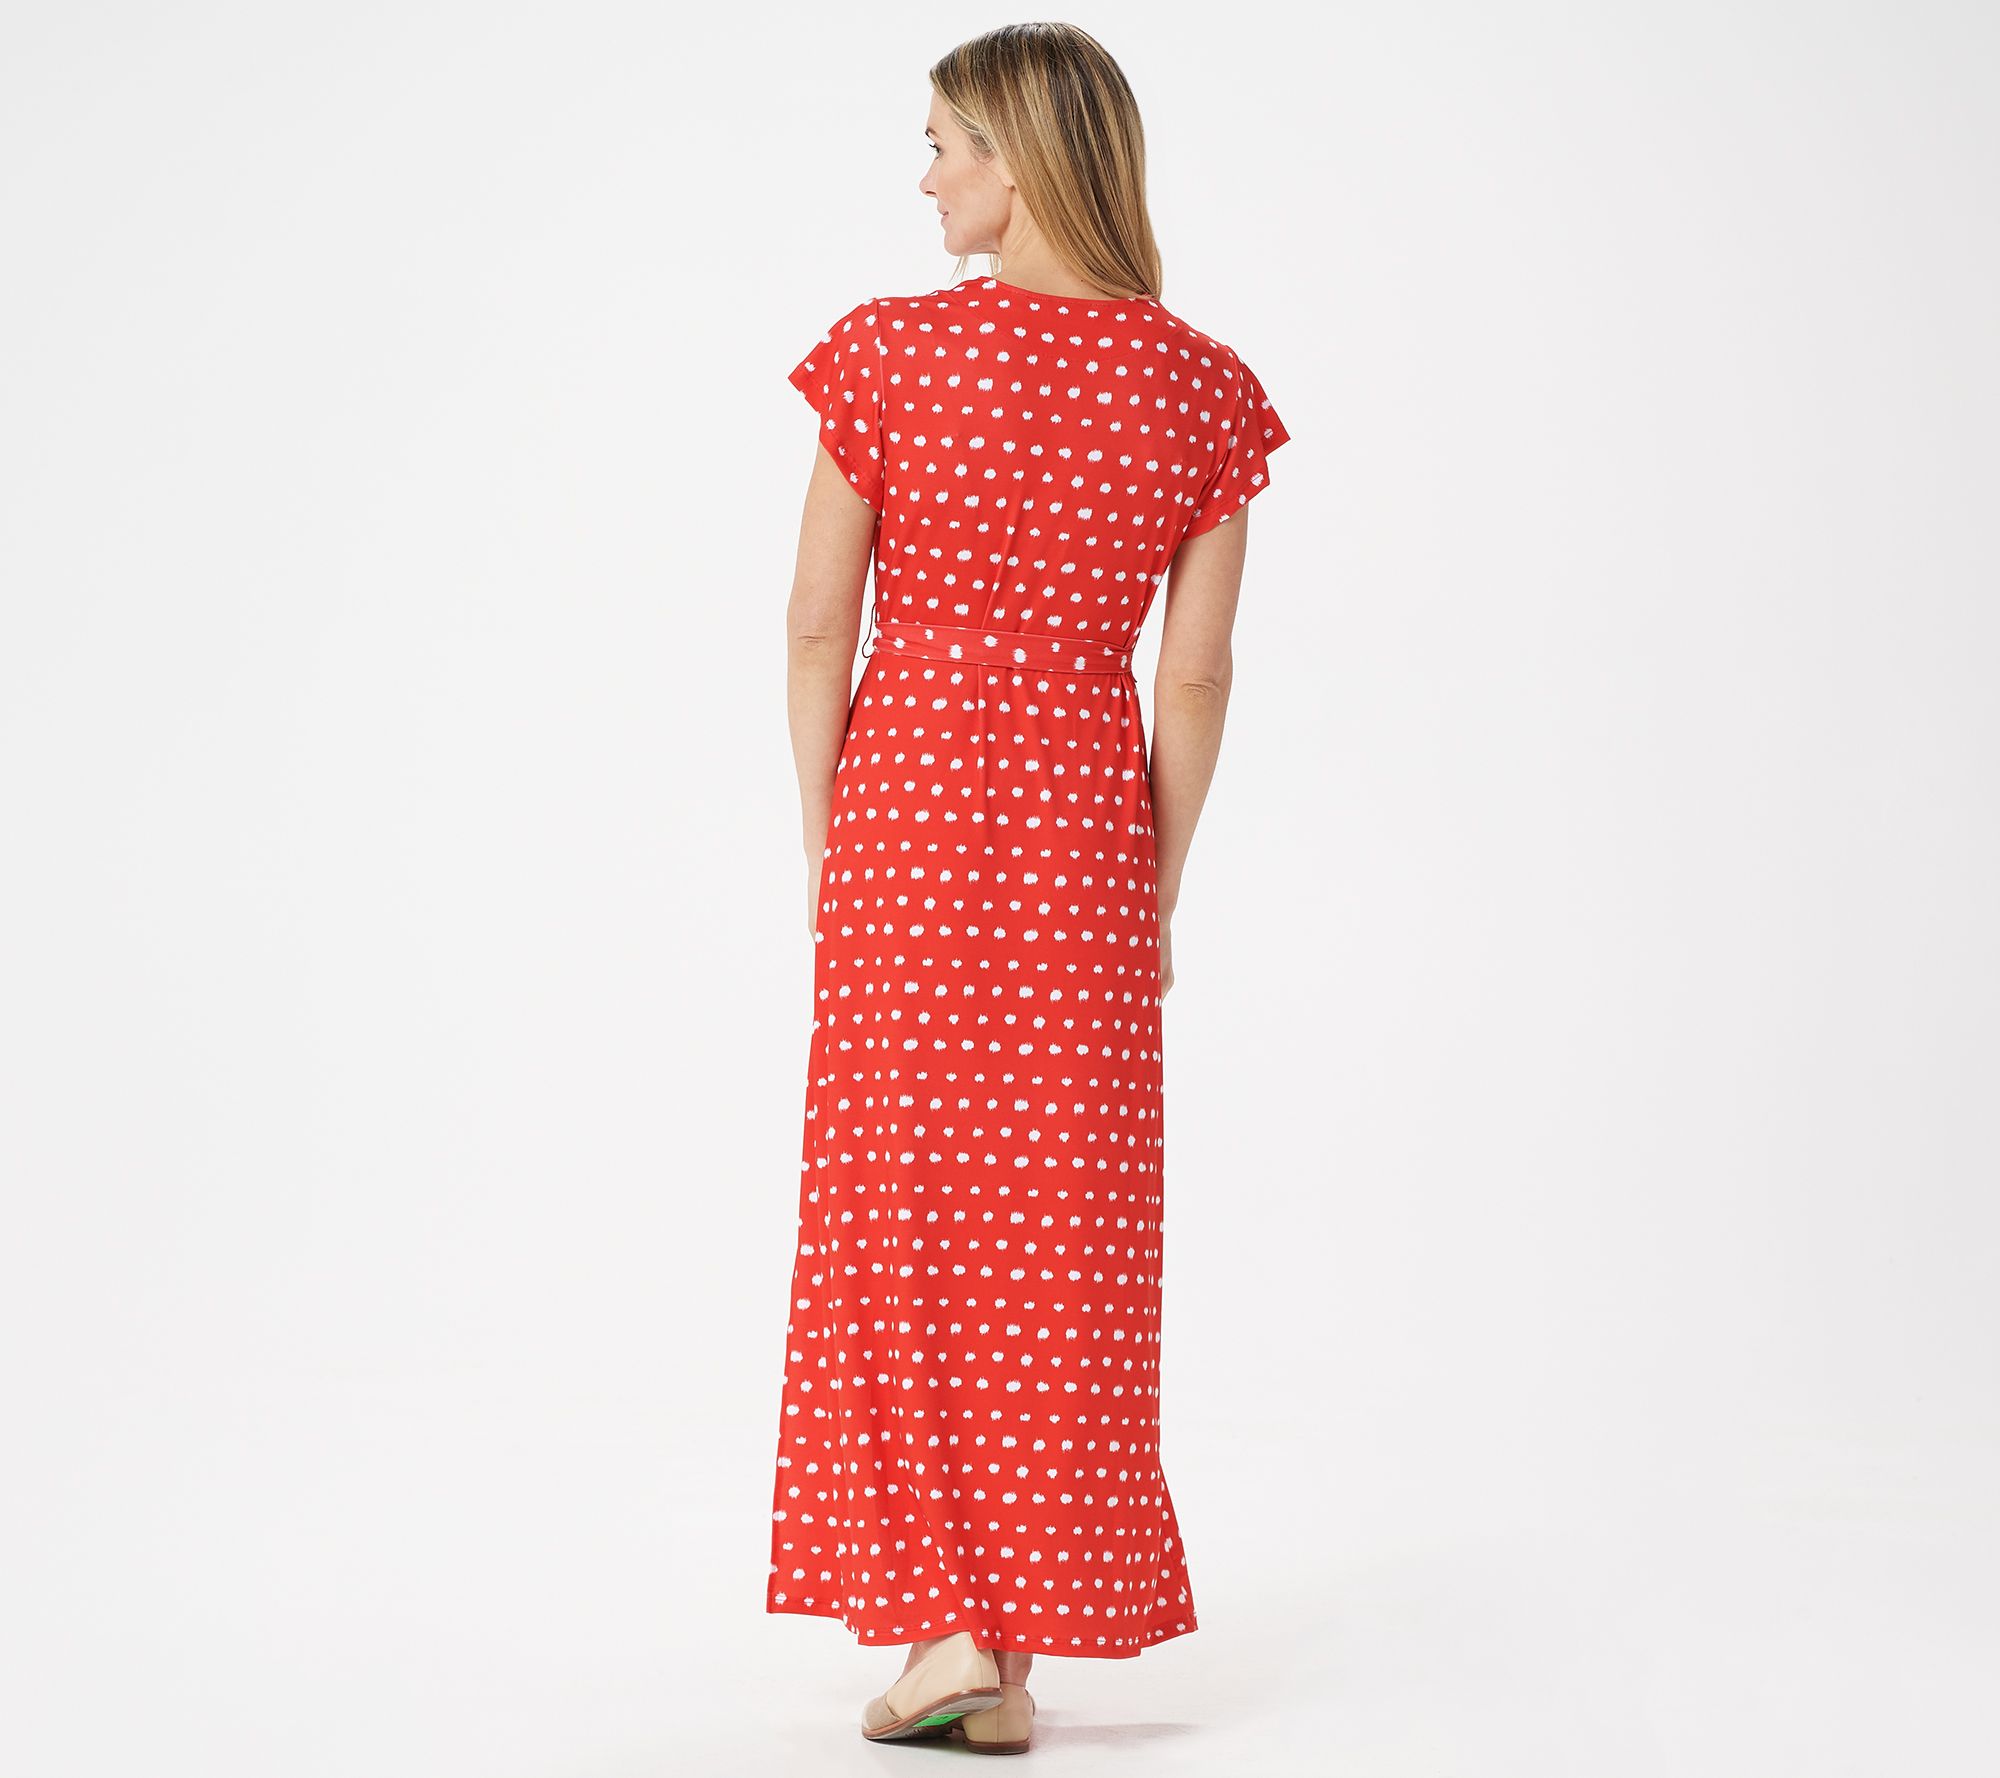 BROOKE SHIELDS Timeless Regular Short-Sleeve Maxi Dress - QVC.com